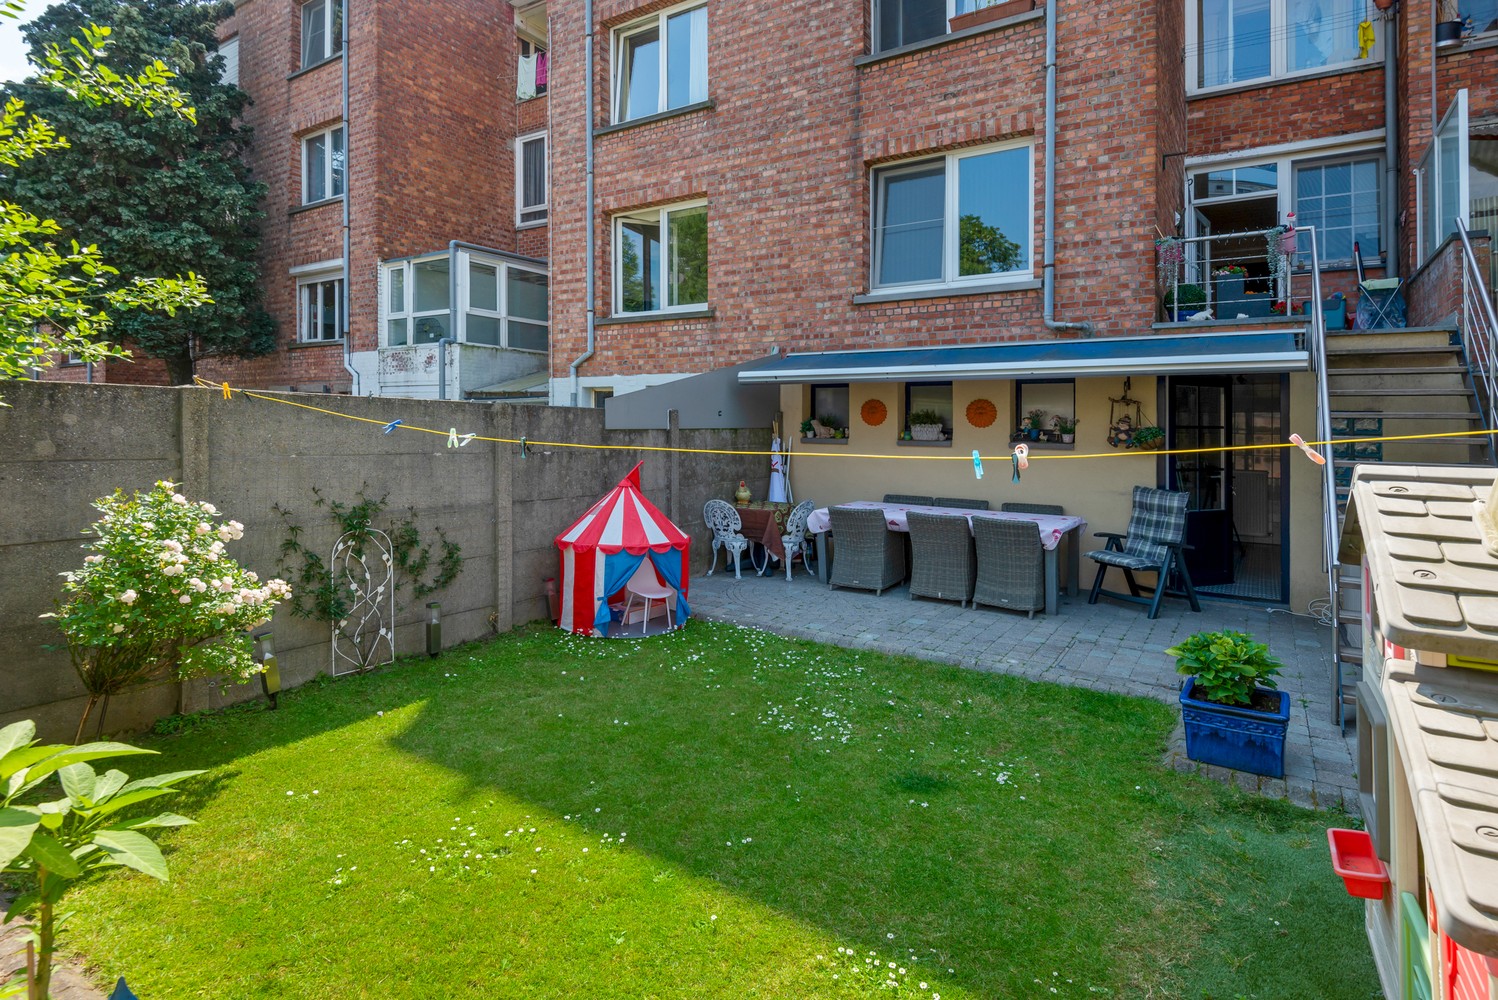 Appartement met tuin, terras en twee slaapkamers te koop in Deurne! afbeelding 15